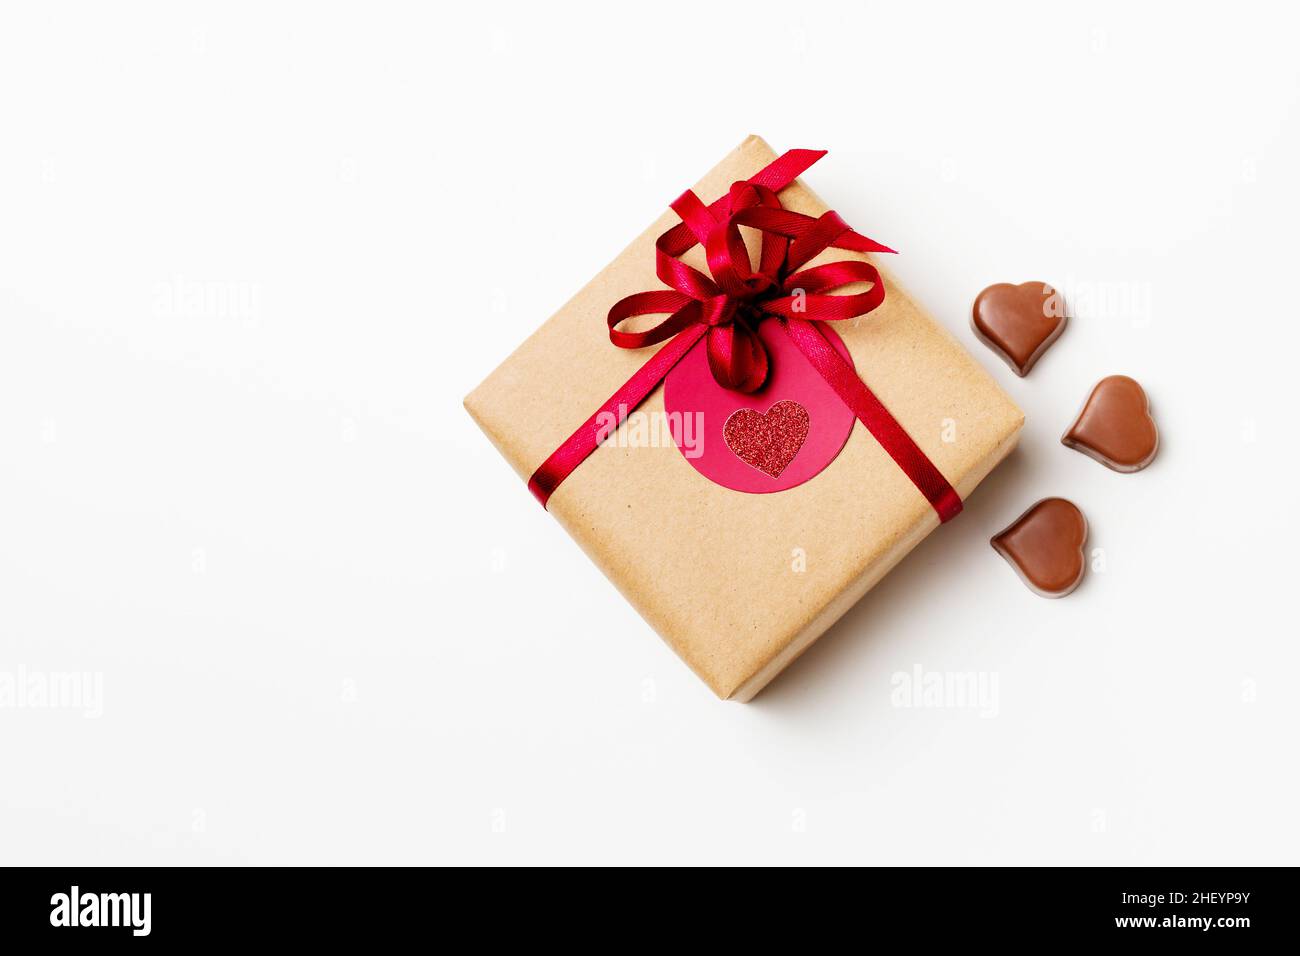 Caja de regalo romántica envuelta en papel de artesanía y lazo